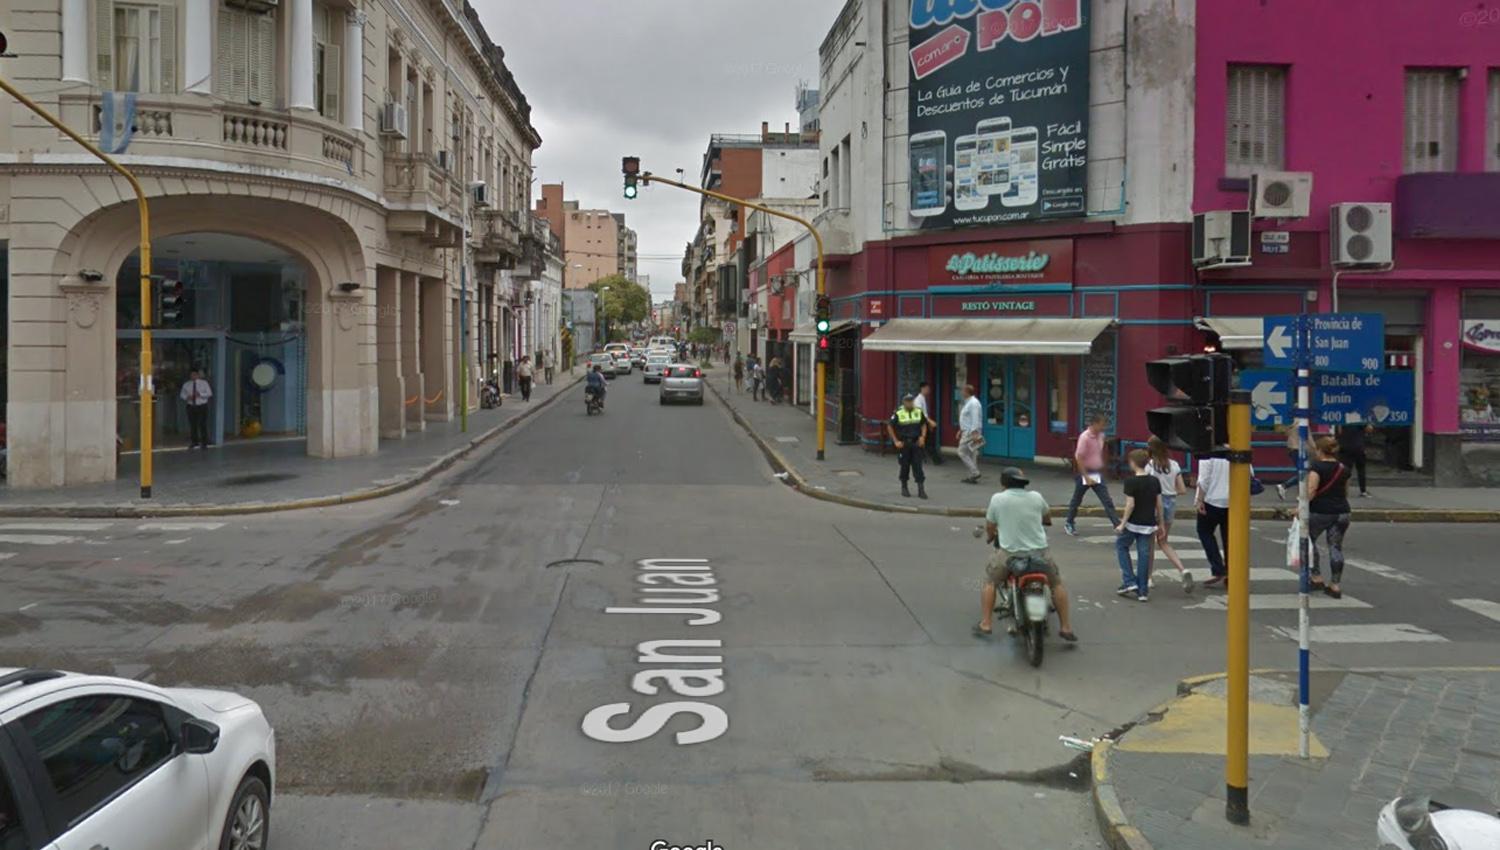 El joven fue atacado en la esquina de San Juan Y Junín. (Captuara de Google Maps)